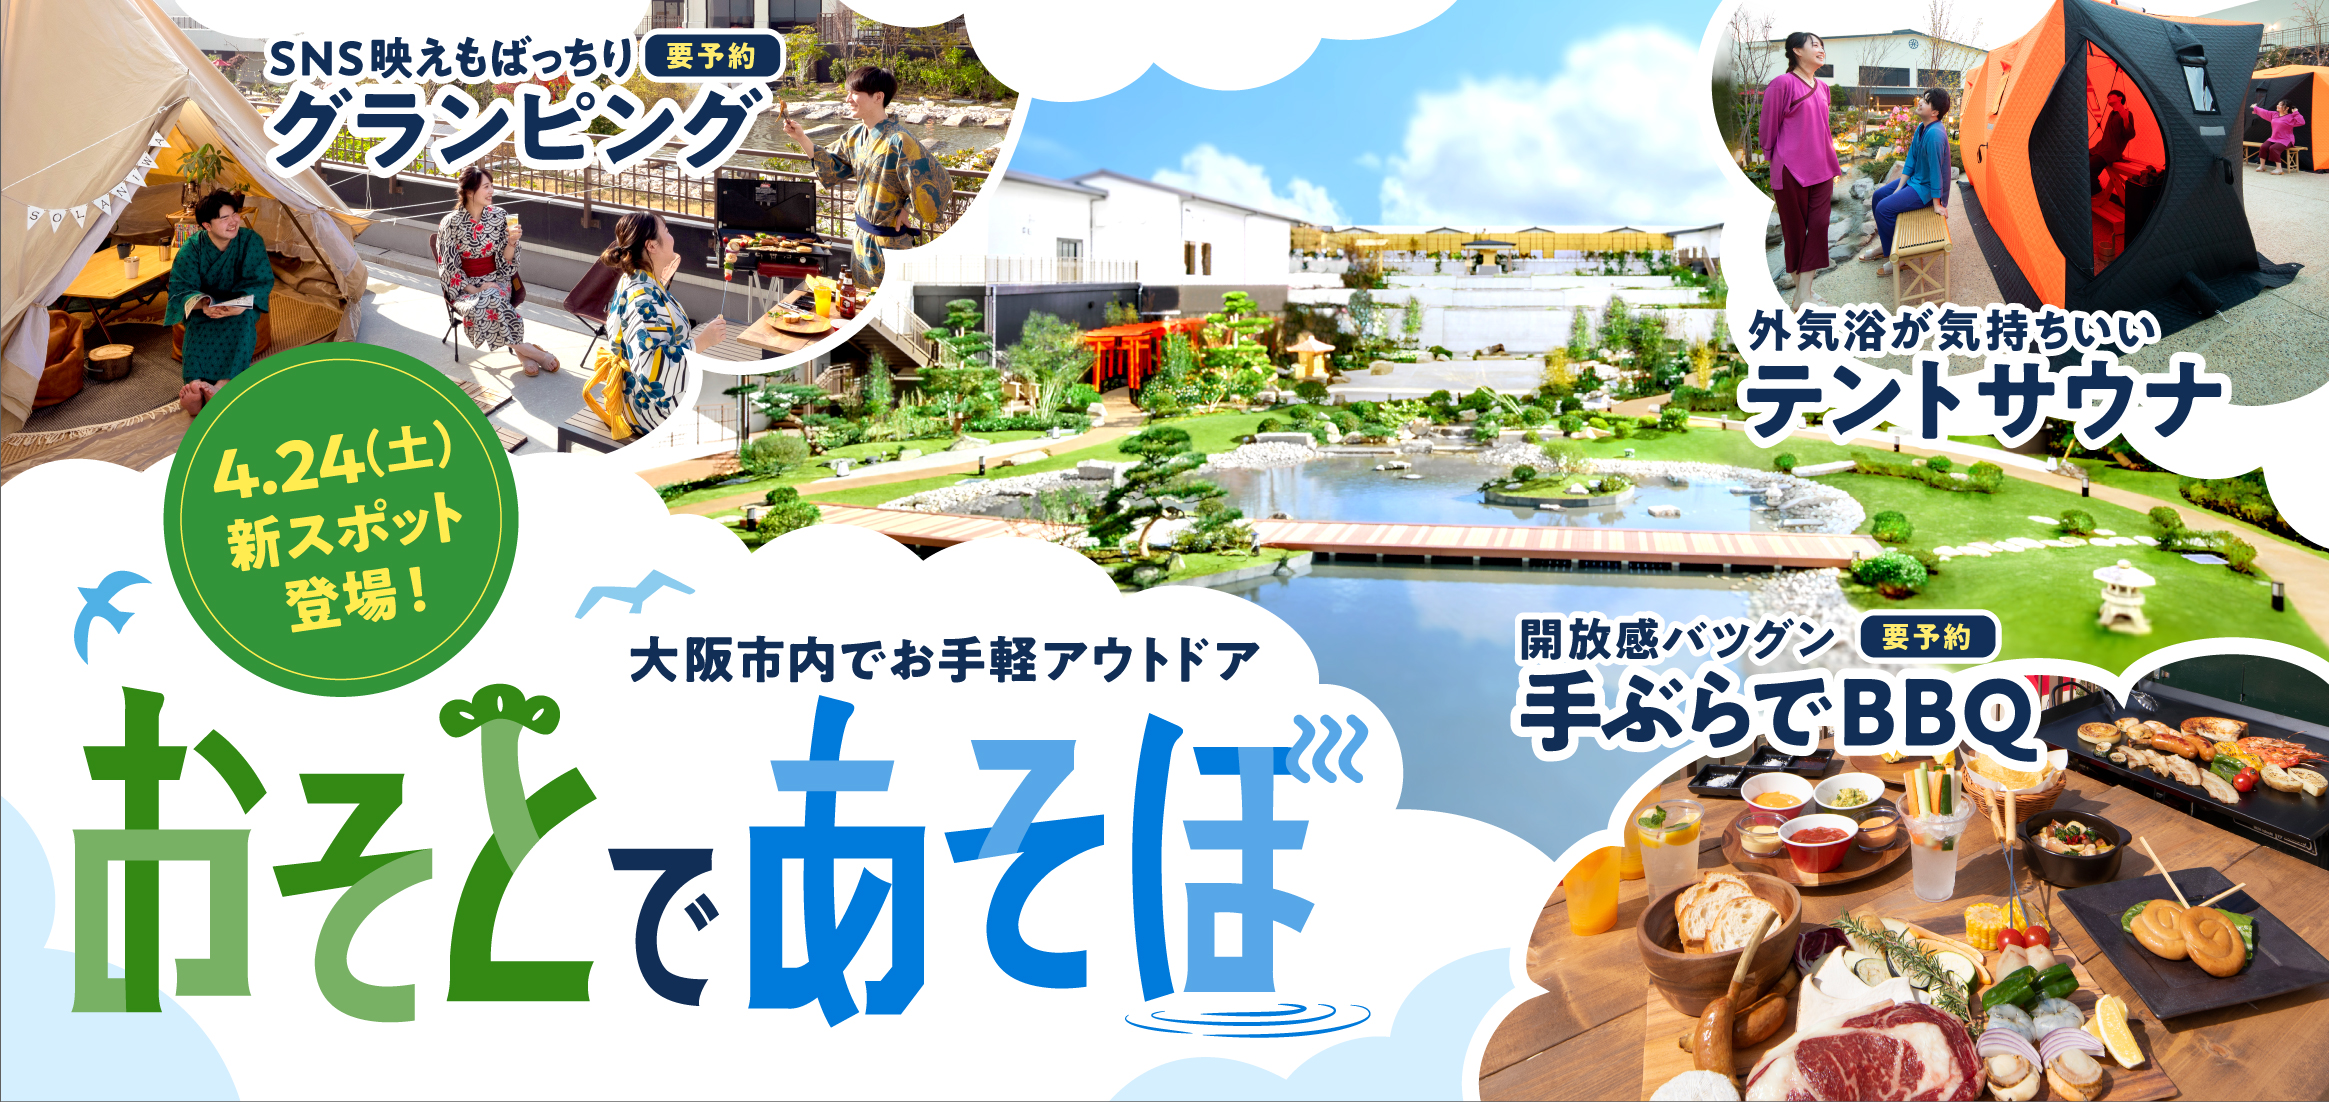 お知らせ 公式 空庭温泉 関西最大級の温泉型テーマパーク